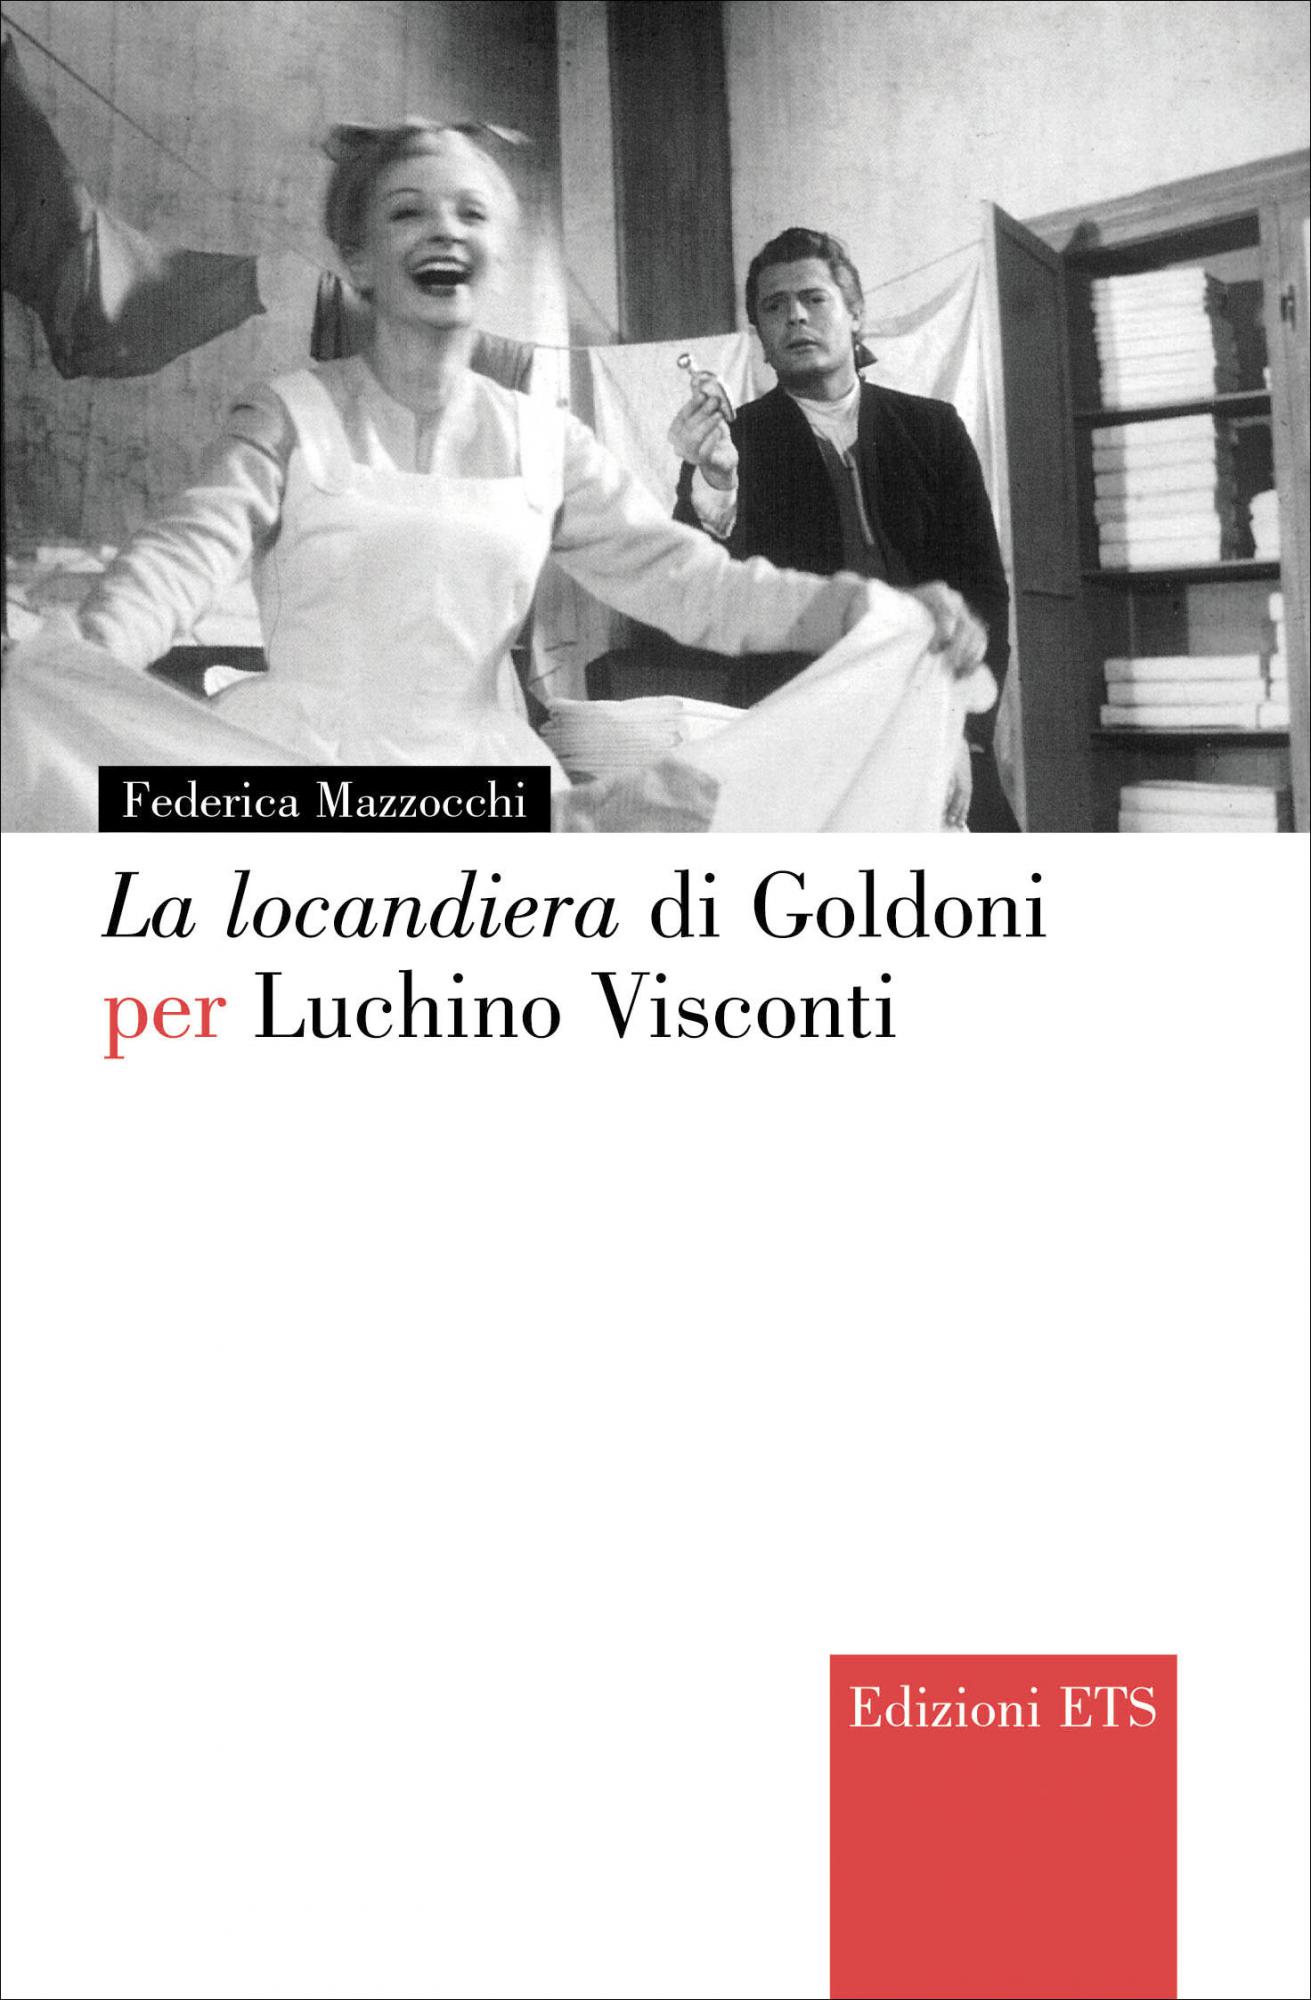 La locandiera di Goldoni per Luchino Visconti